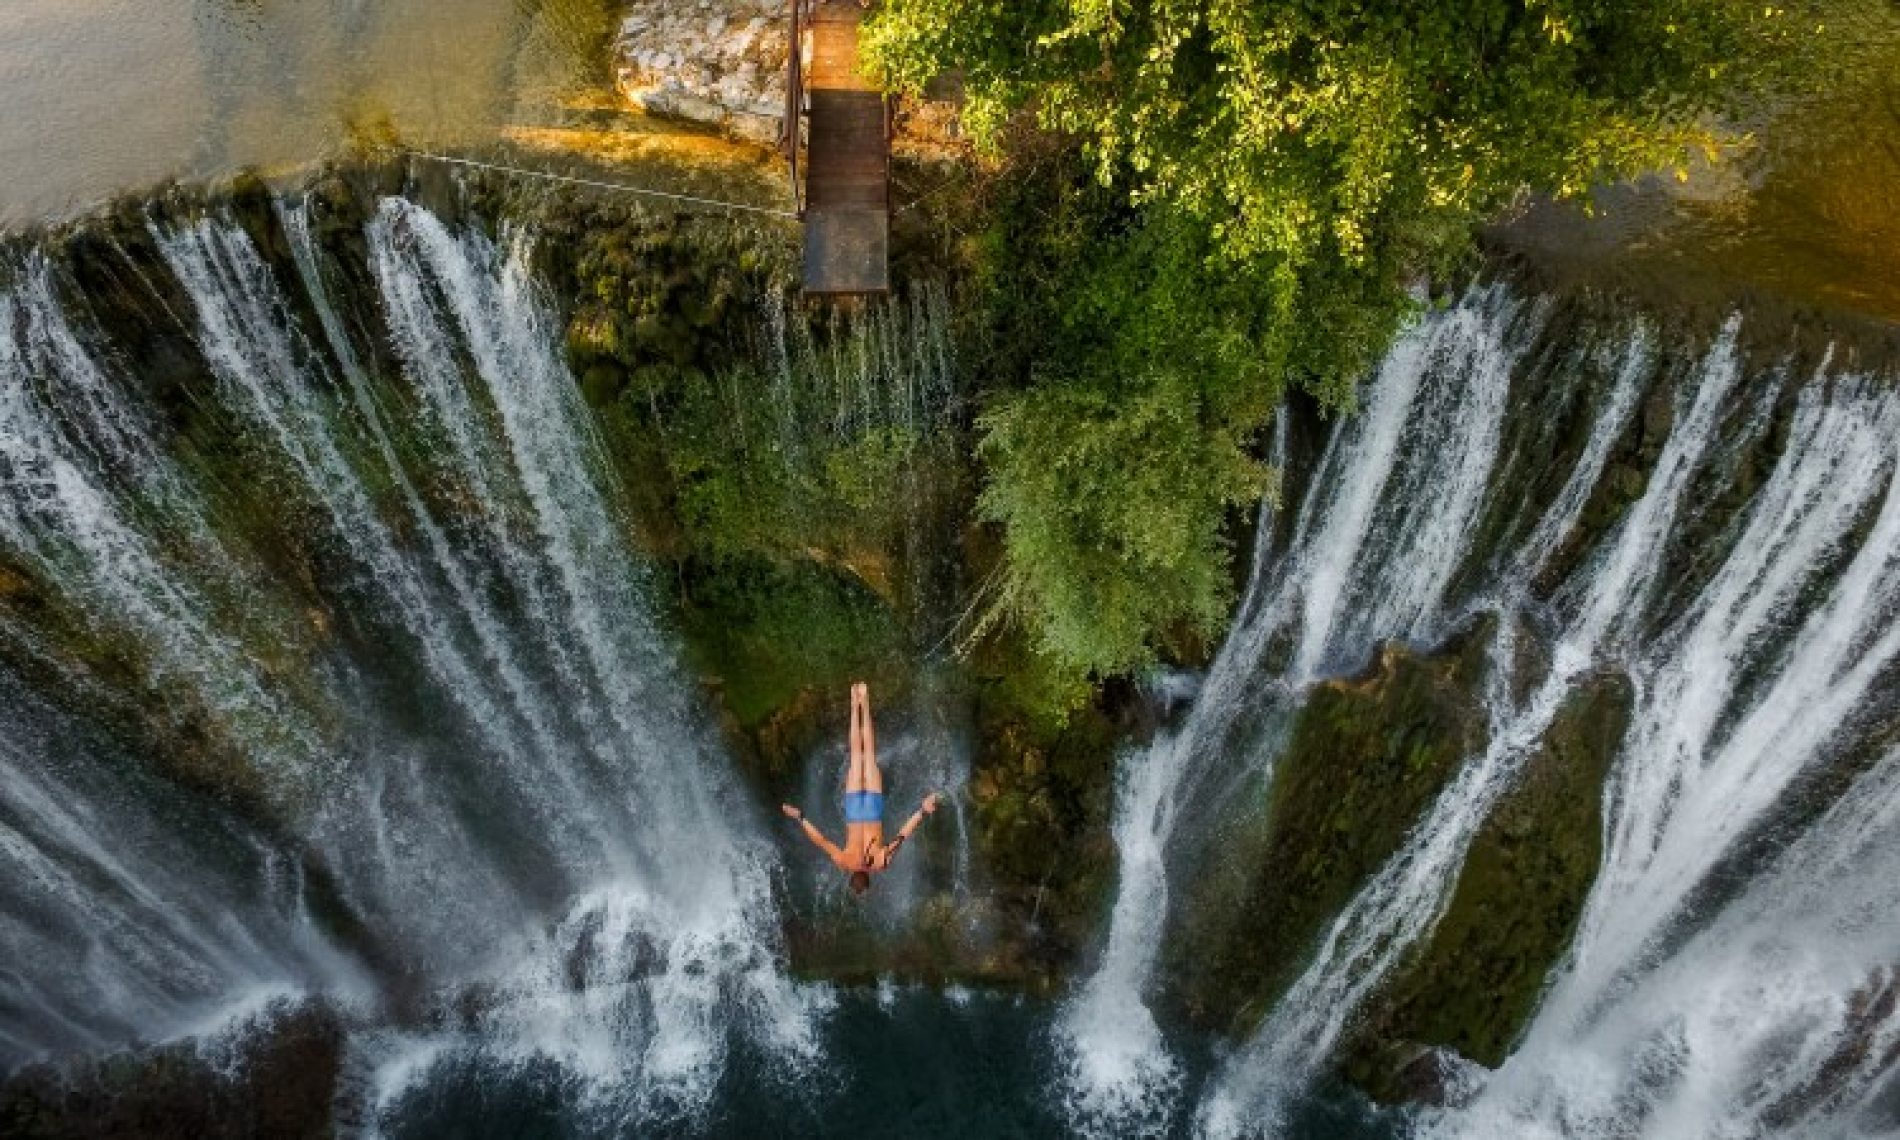 Skokovi sa vodopada u Jajcu 14. augusta, učestvuje više od 30 skakača